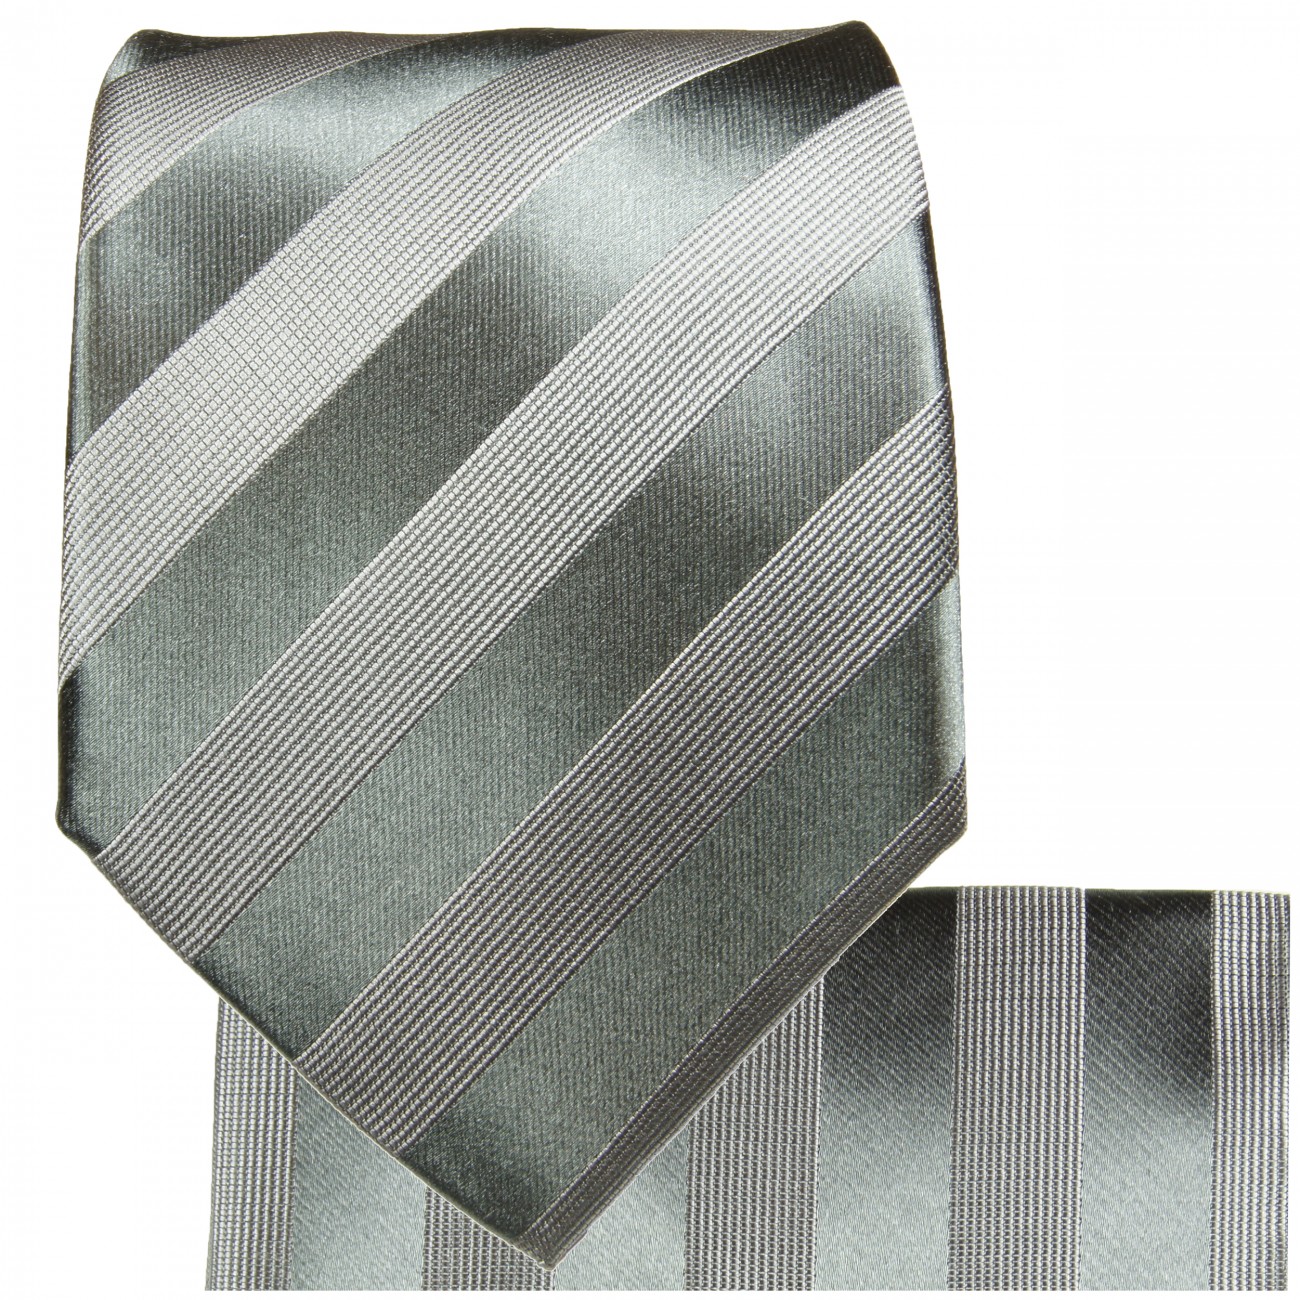 Silber graue Krawatte gestreift Seide mit Einstecktuch